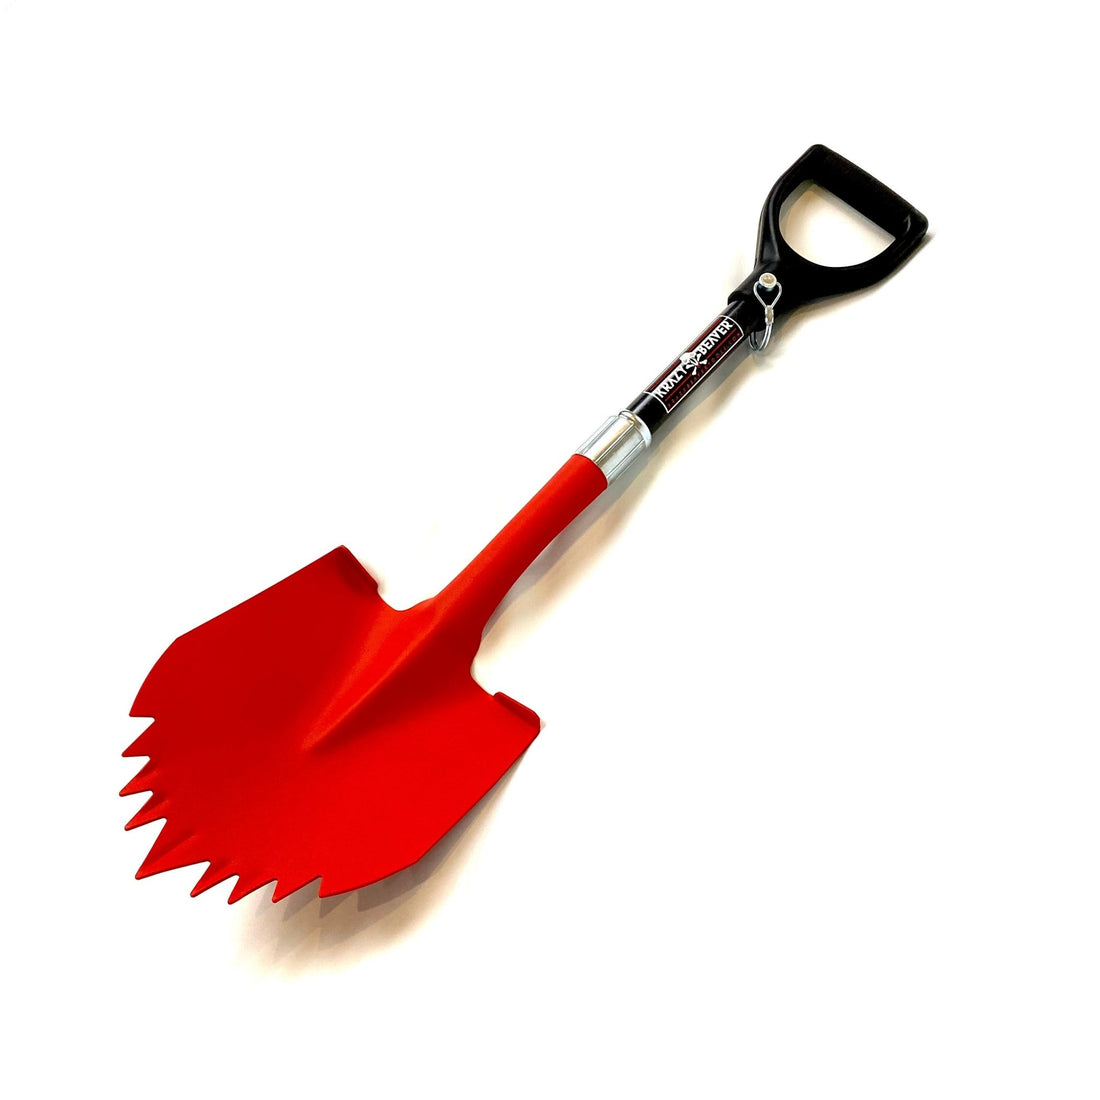 ATV / UTV Krazy Beaver Shorty Shovel (Textured Red Head / Black Handle) - Diesel Freak